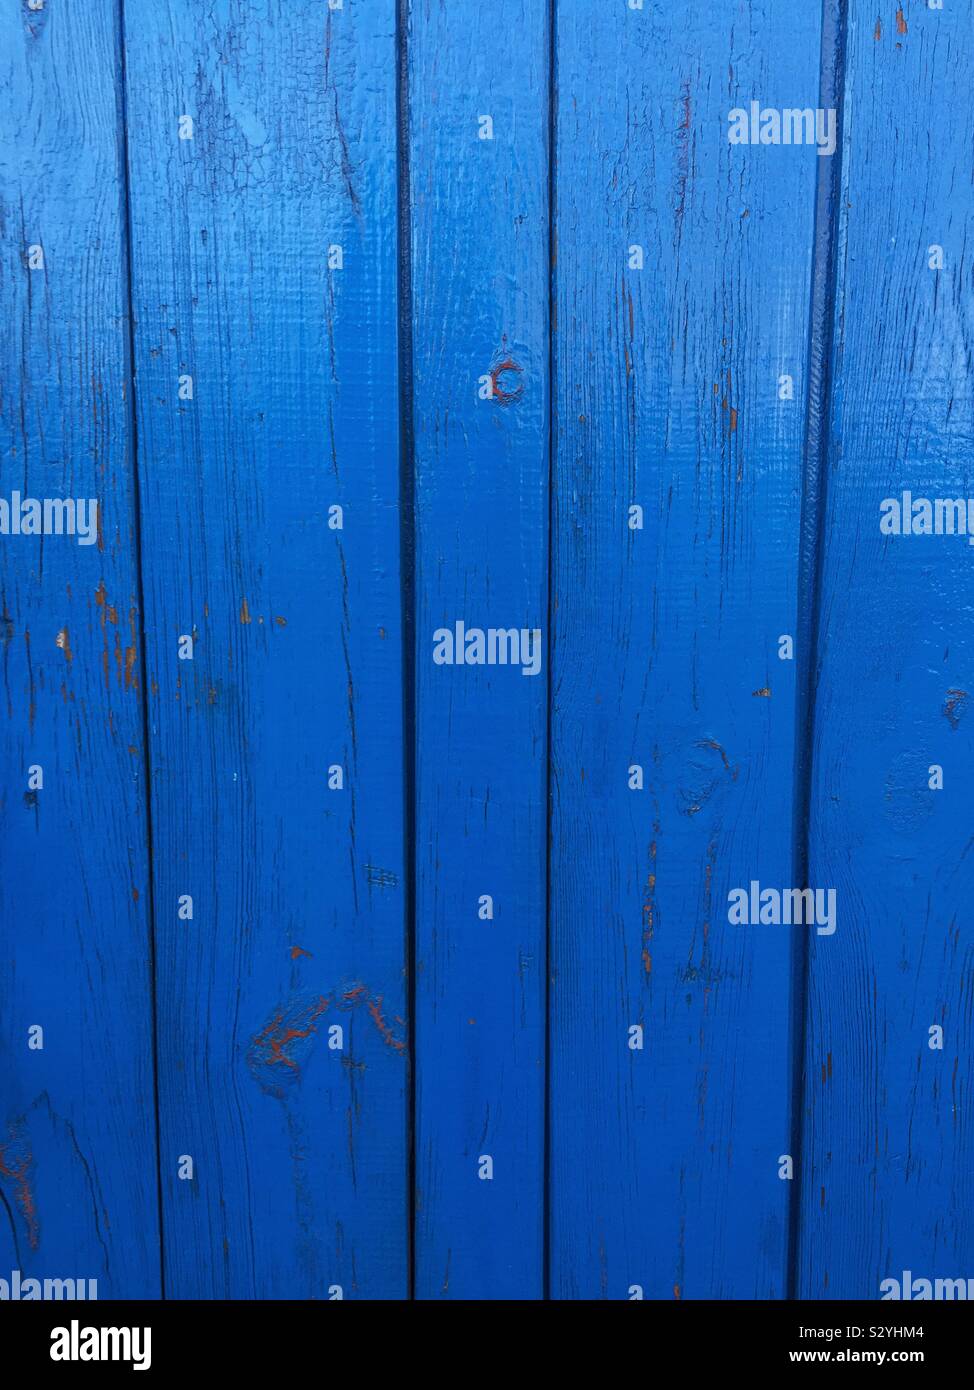 Closeup of old blue wooden door Stock Photo